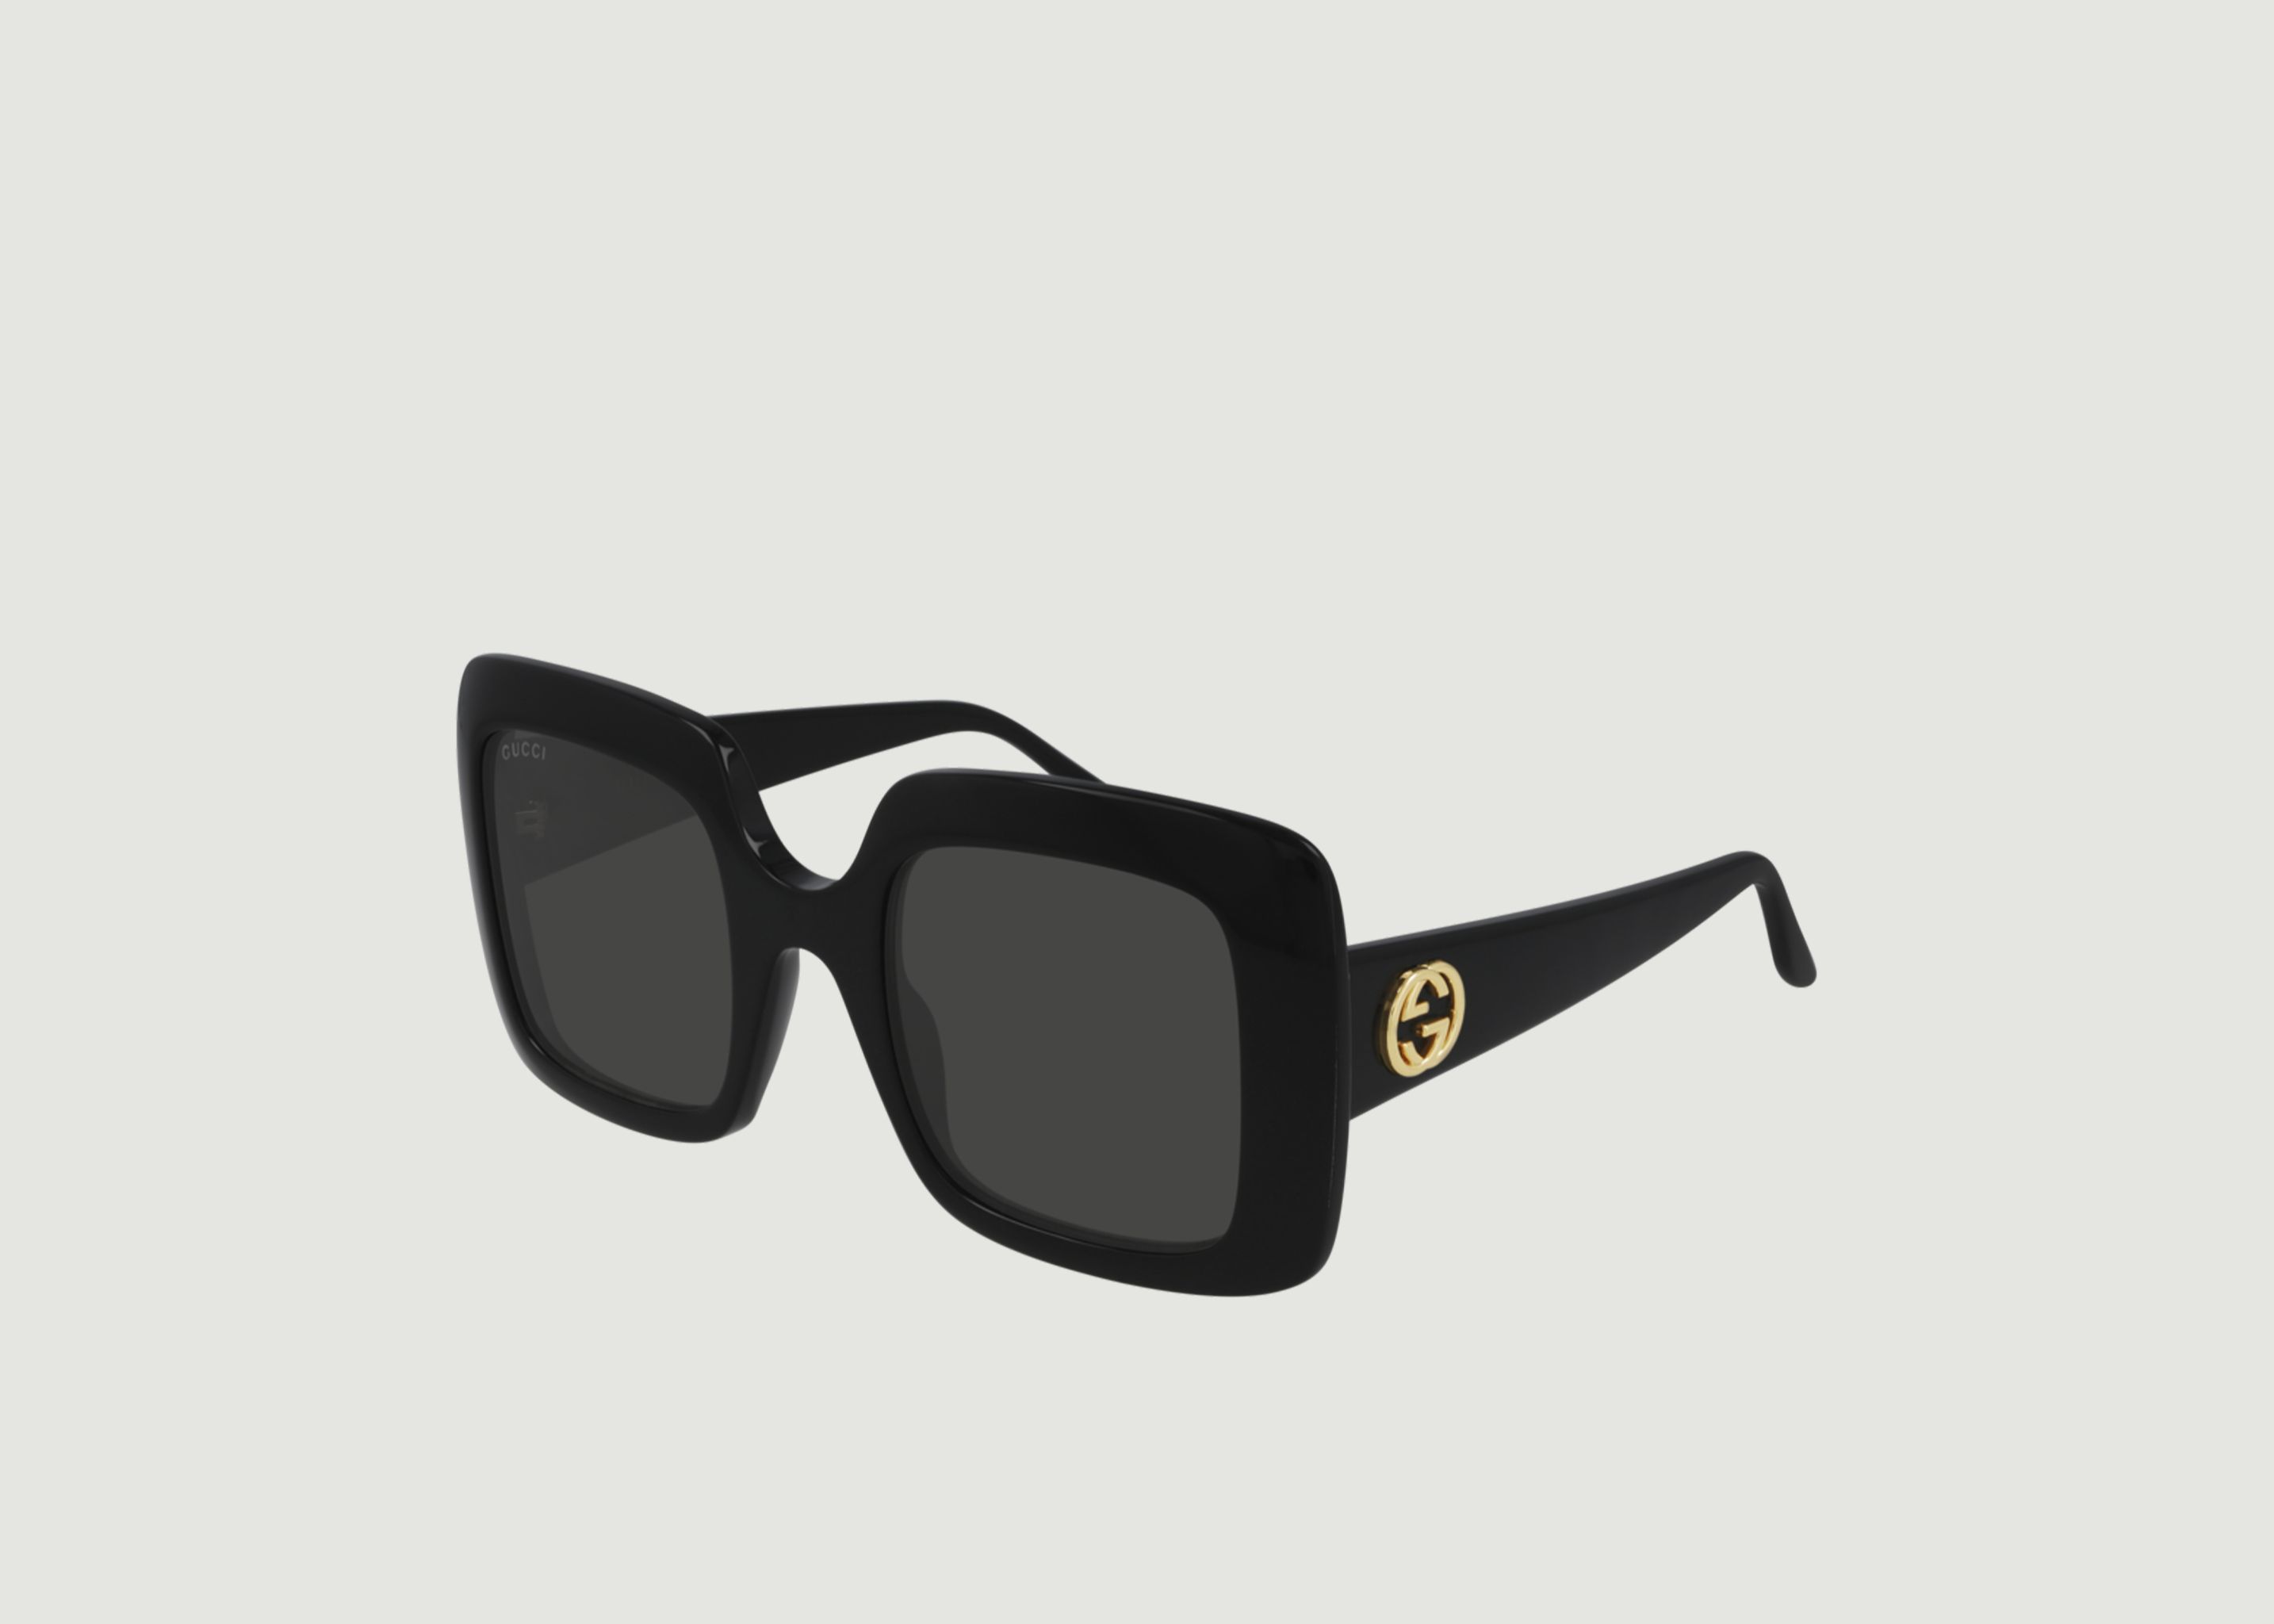 Square sunglasses - Gucci